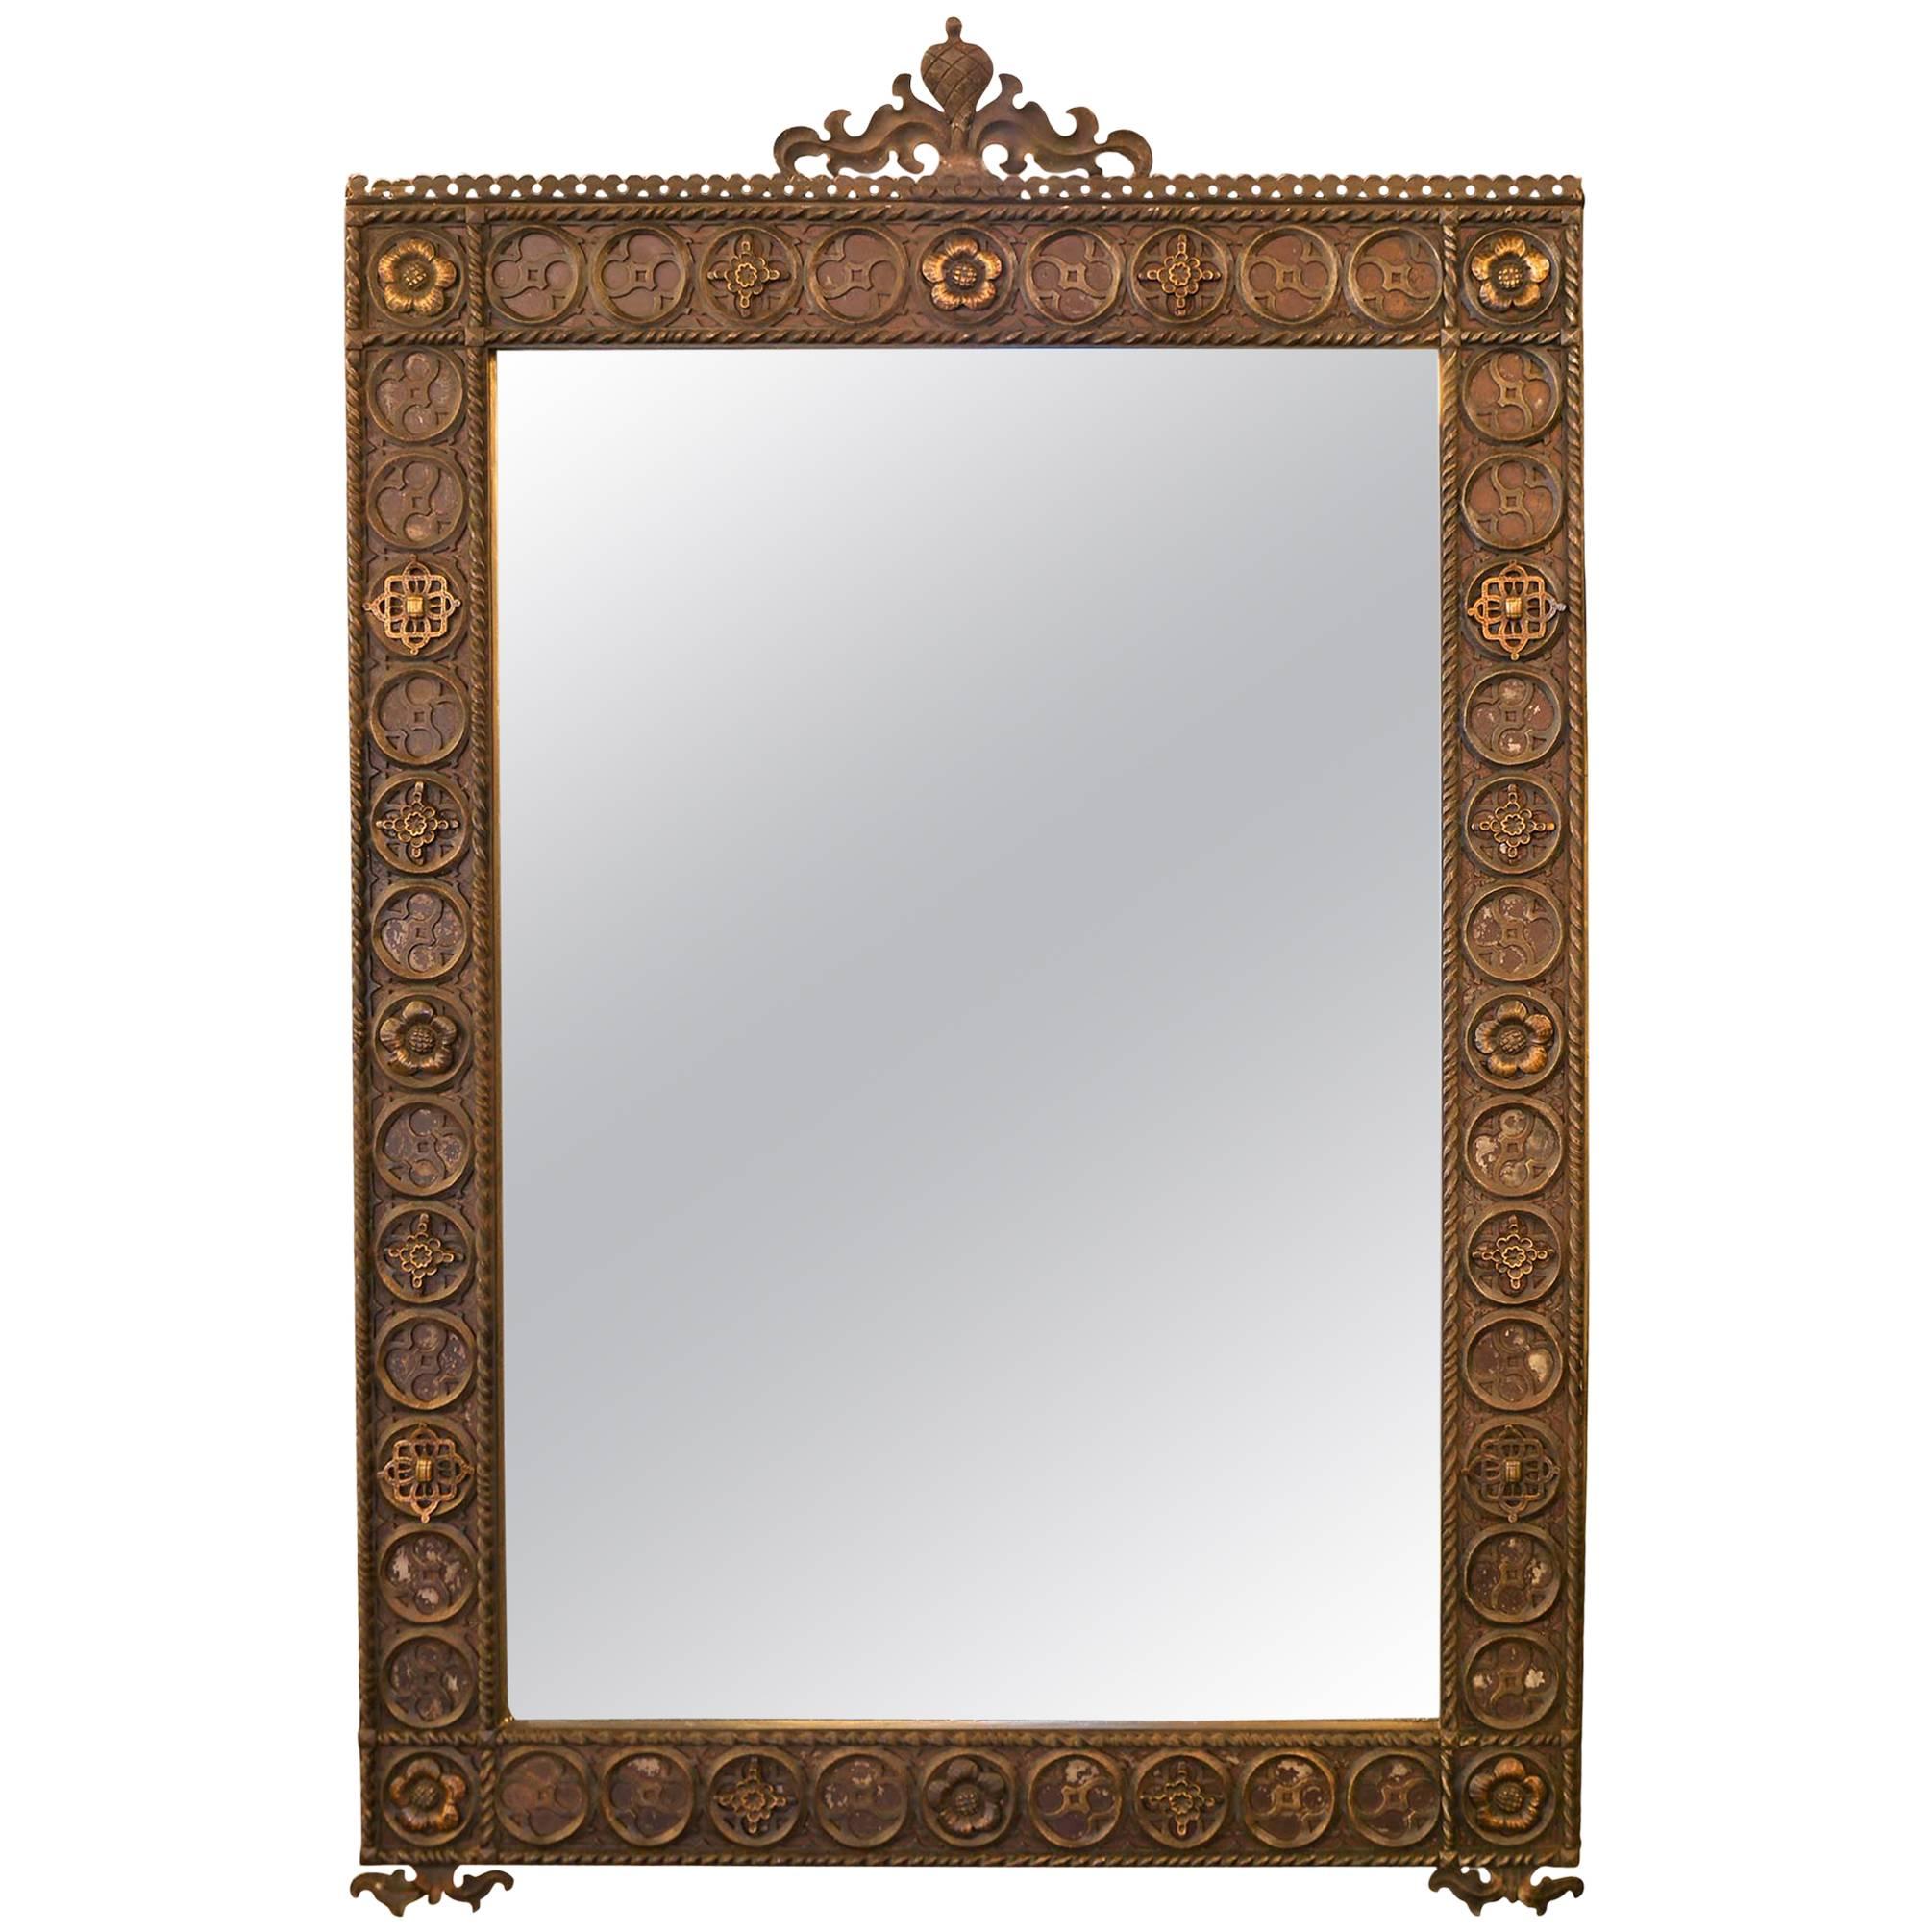 I. P. Frink Large Ornate Illuminated Mirror